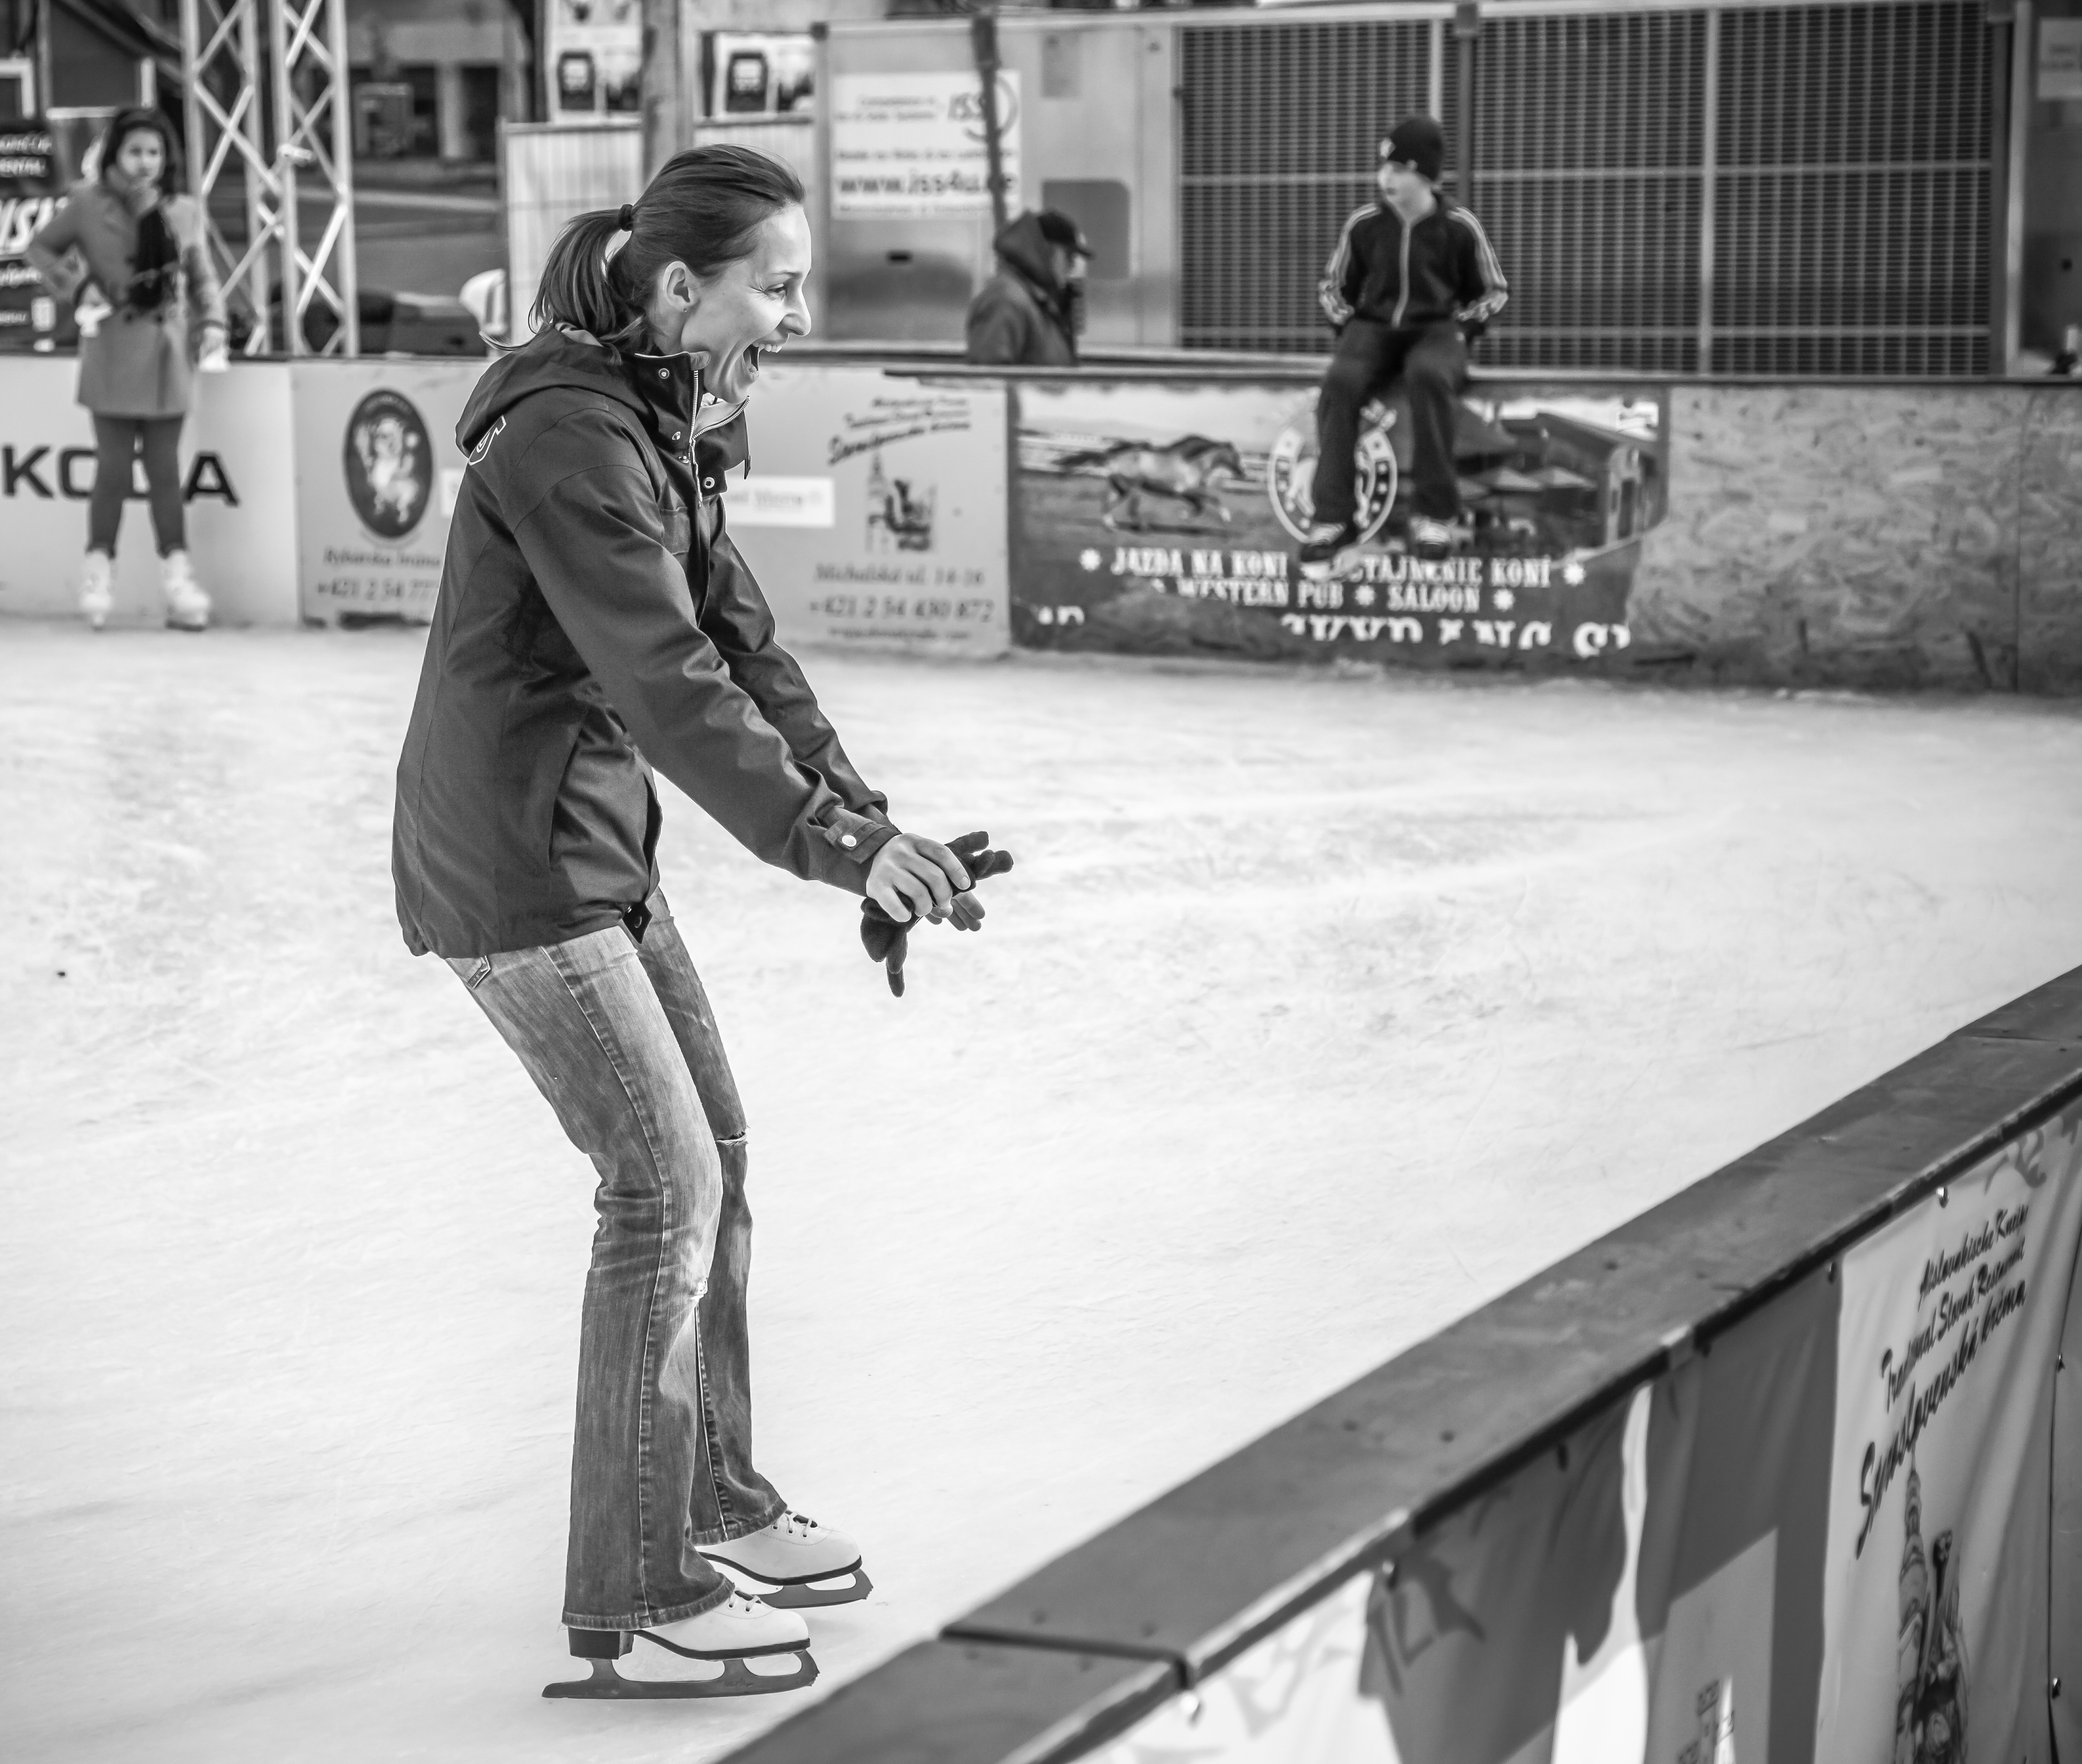 Skating or keeping balance photo